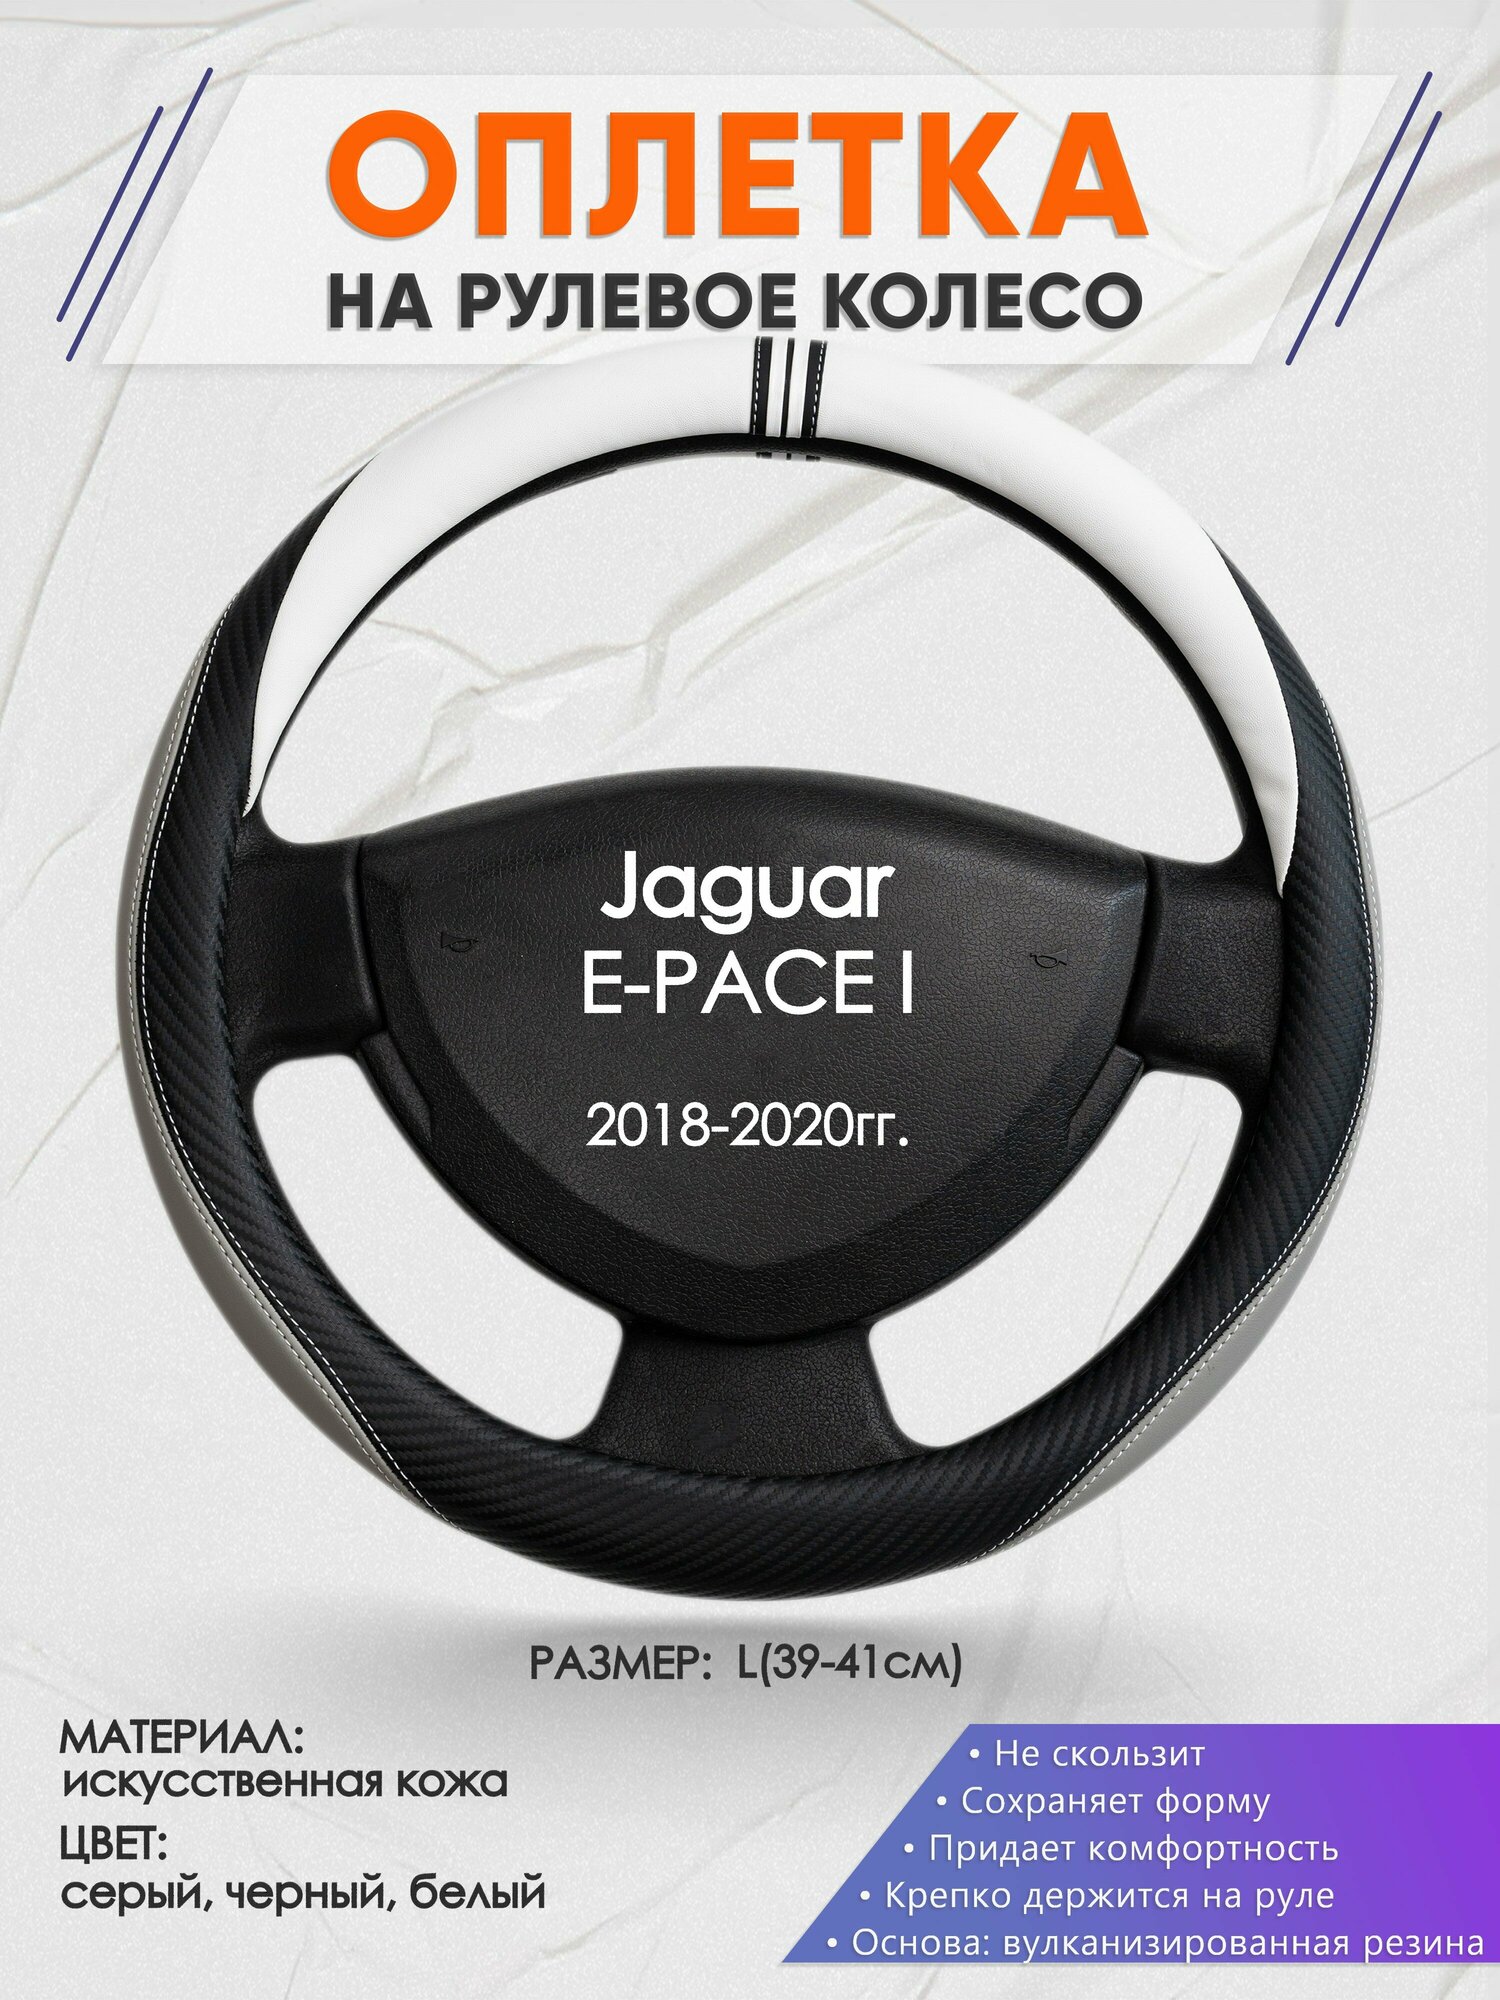 Оплетка на руль для Jaguar E-PACE I(Ягуар епасе) 2018-2020 L(39-41см) Искусственная кожа 84